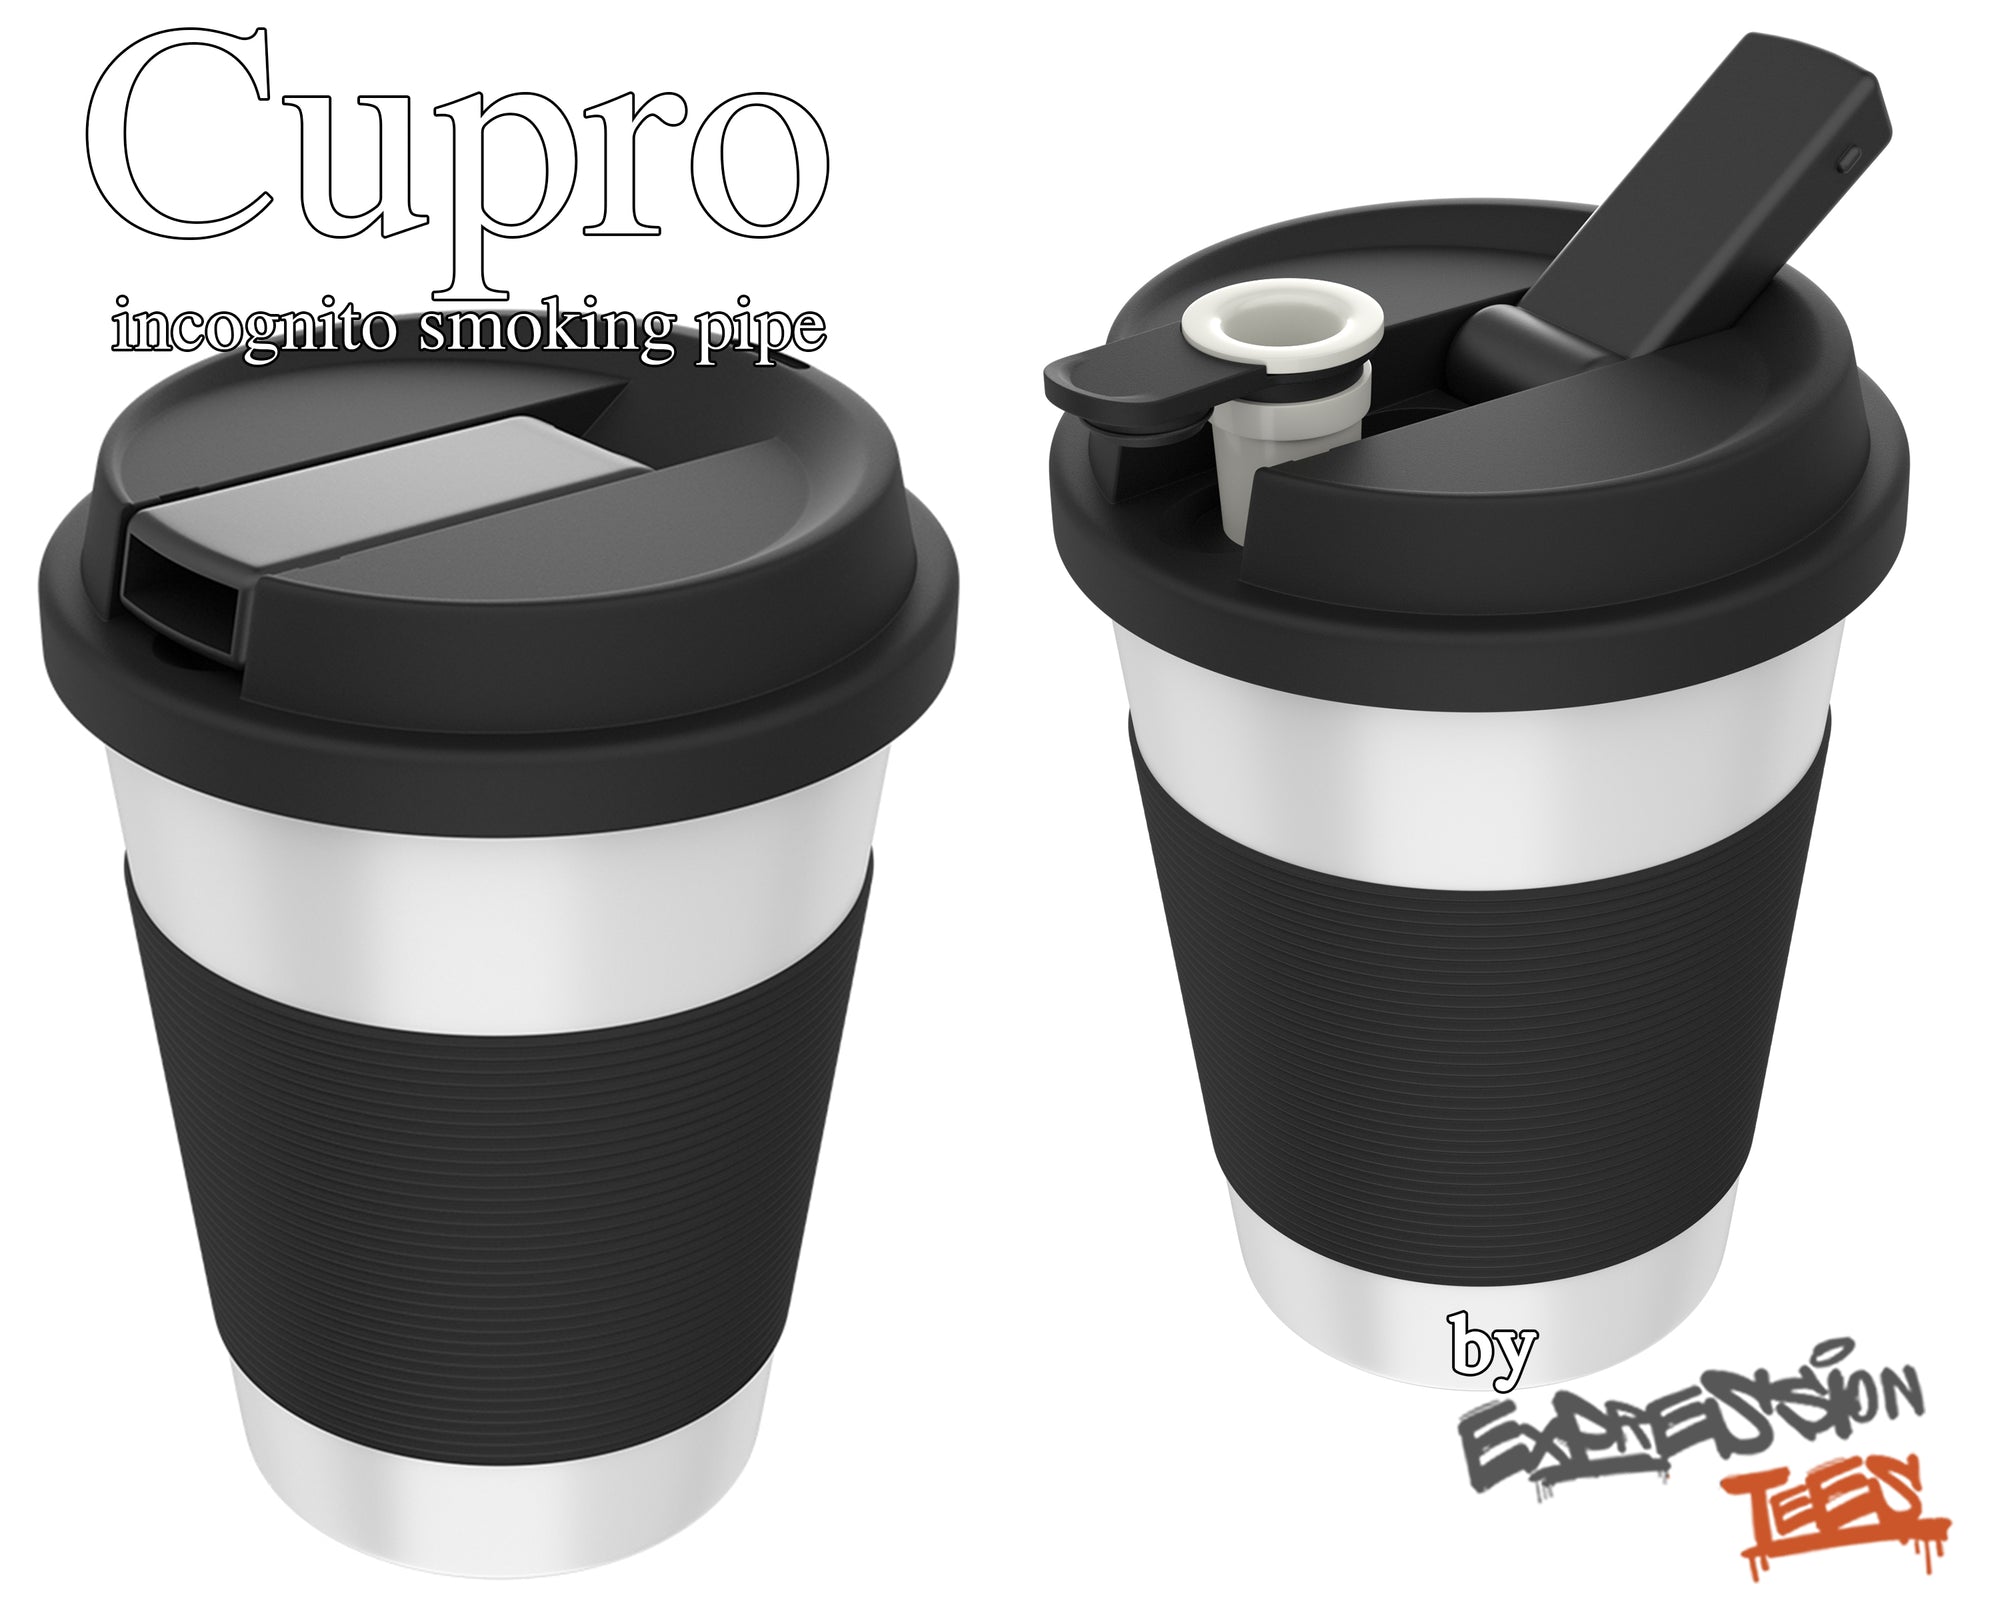 Cupro Pipe Disguised As Simple Coffee Cup - Herb Grinders